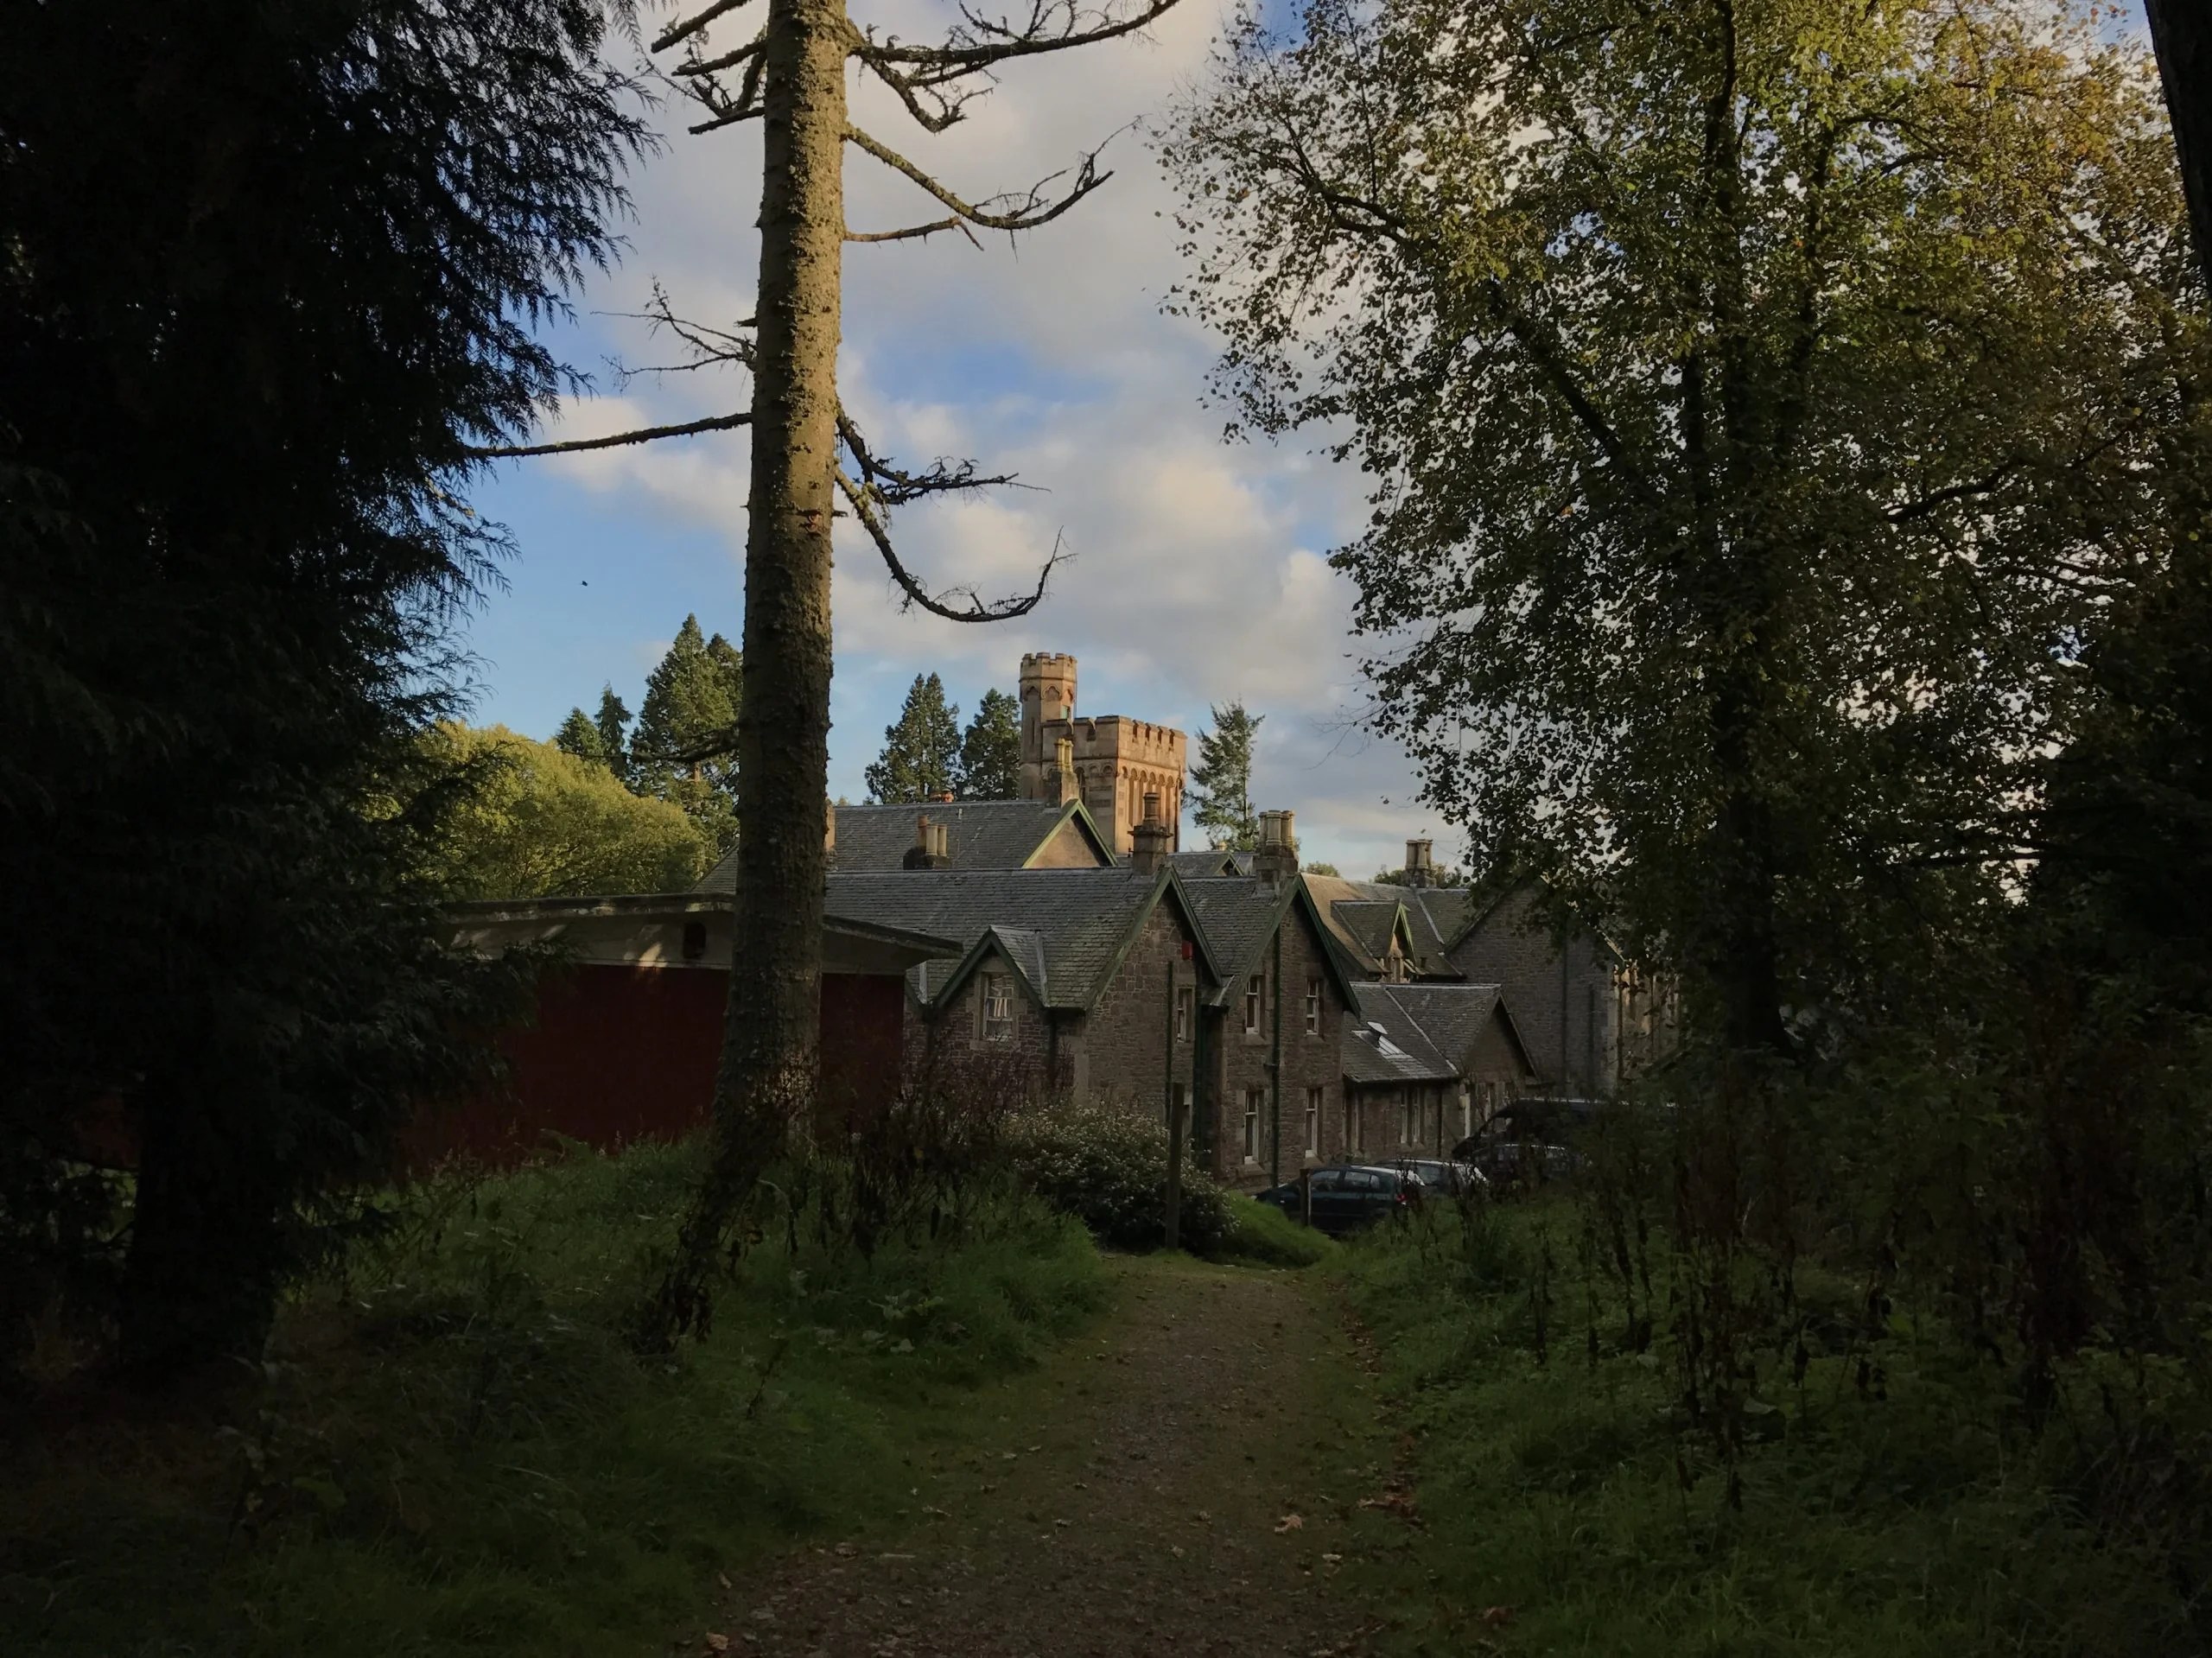 Path through trees to Wiston Lodge